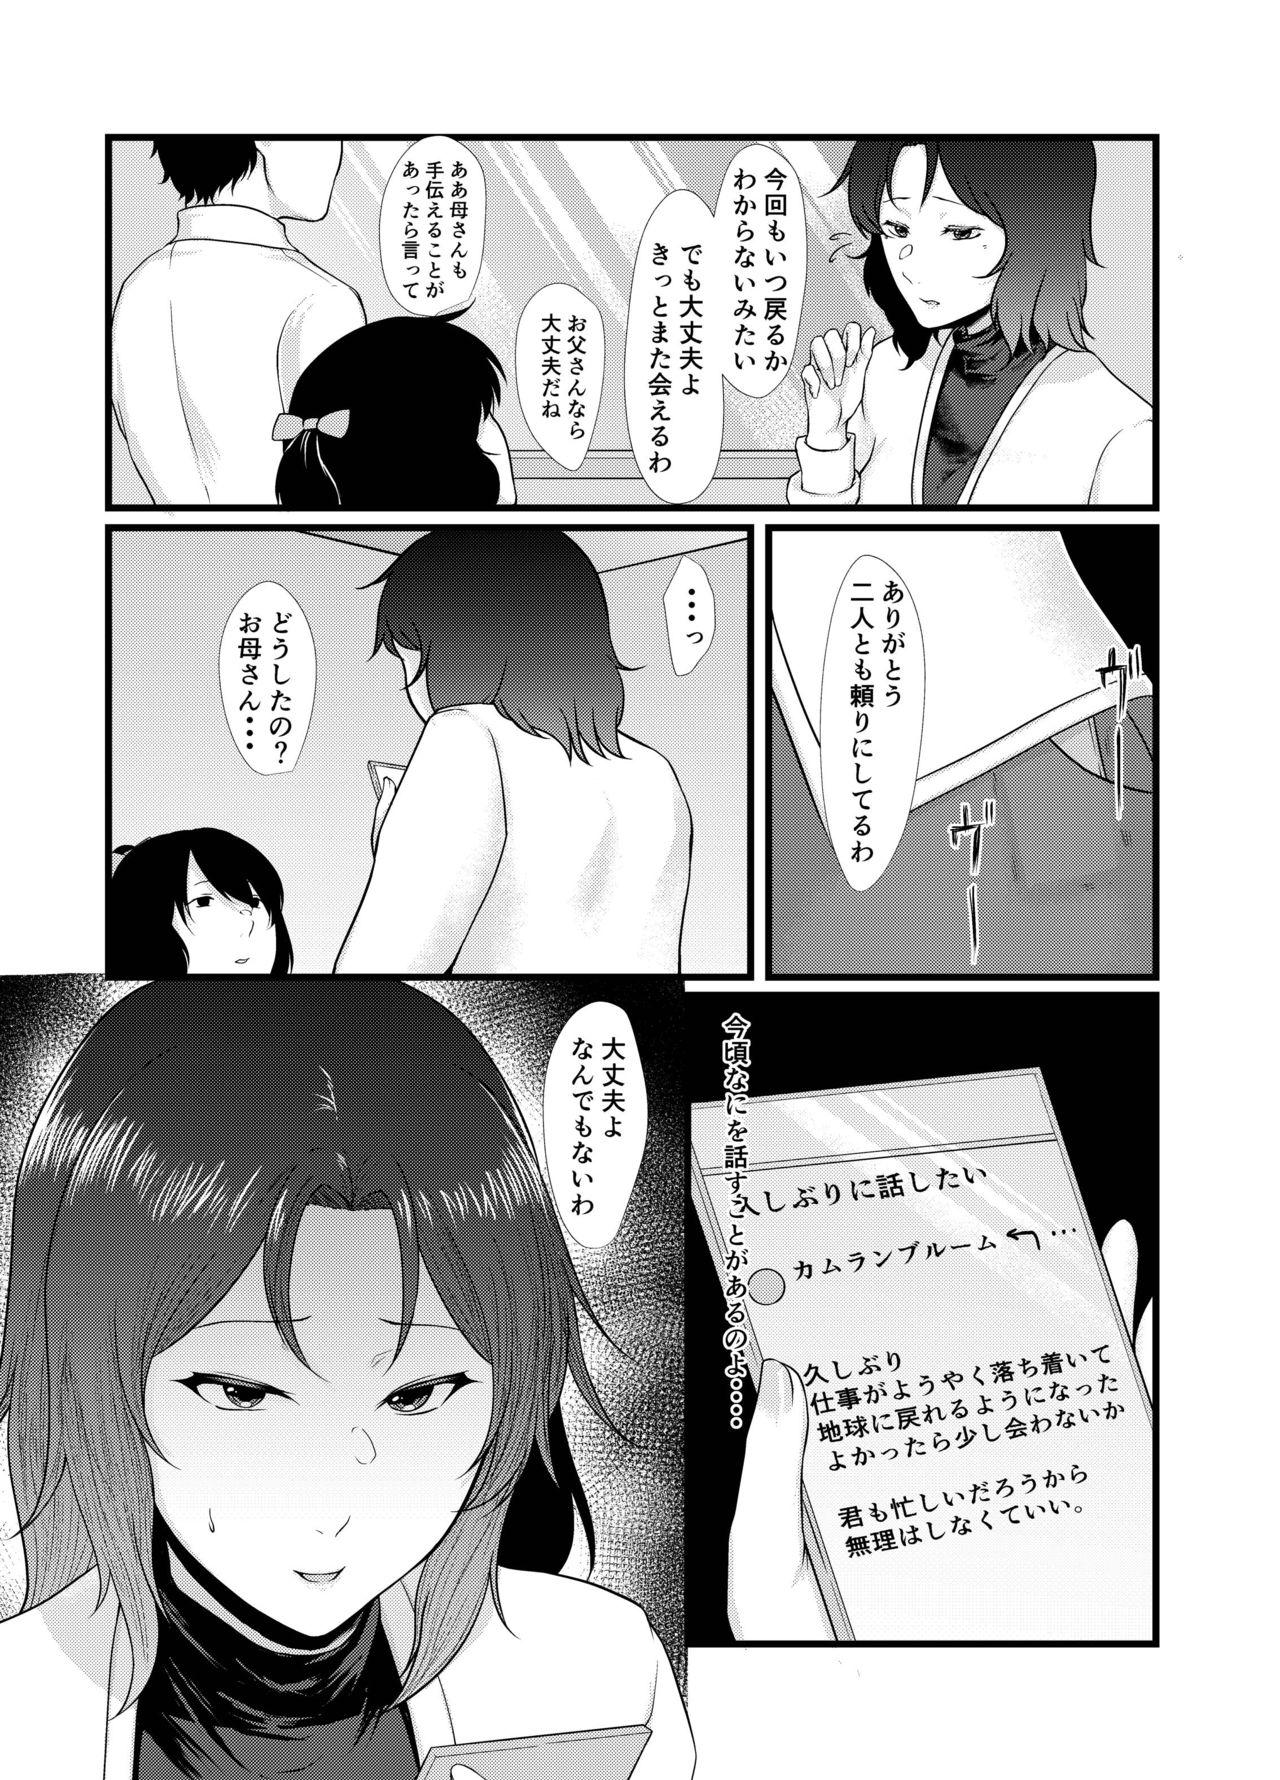 Safadinha Uchū no Anata wa Tōikara - Gundam Morena - Page 4